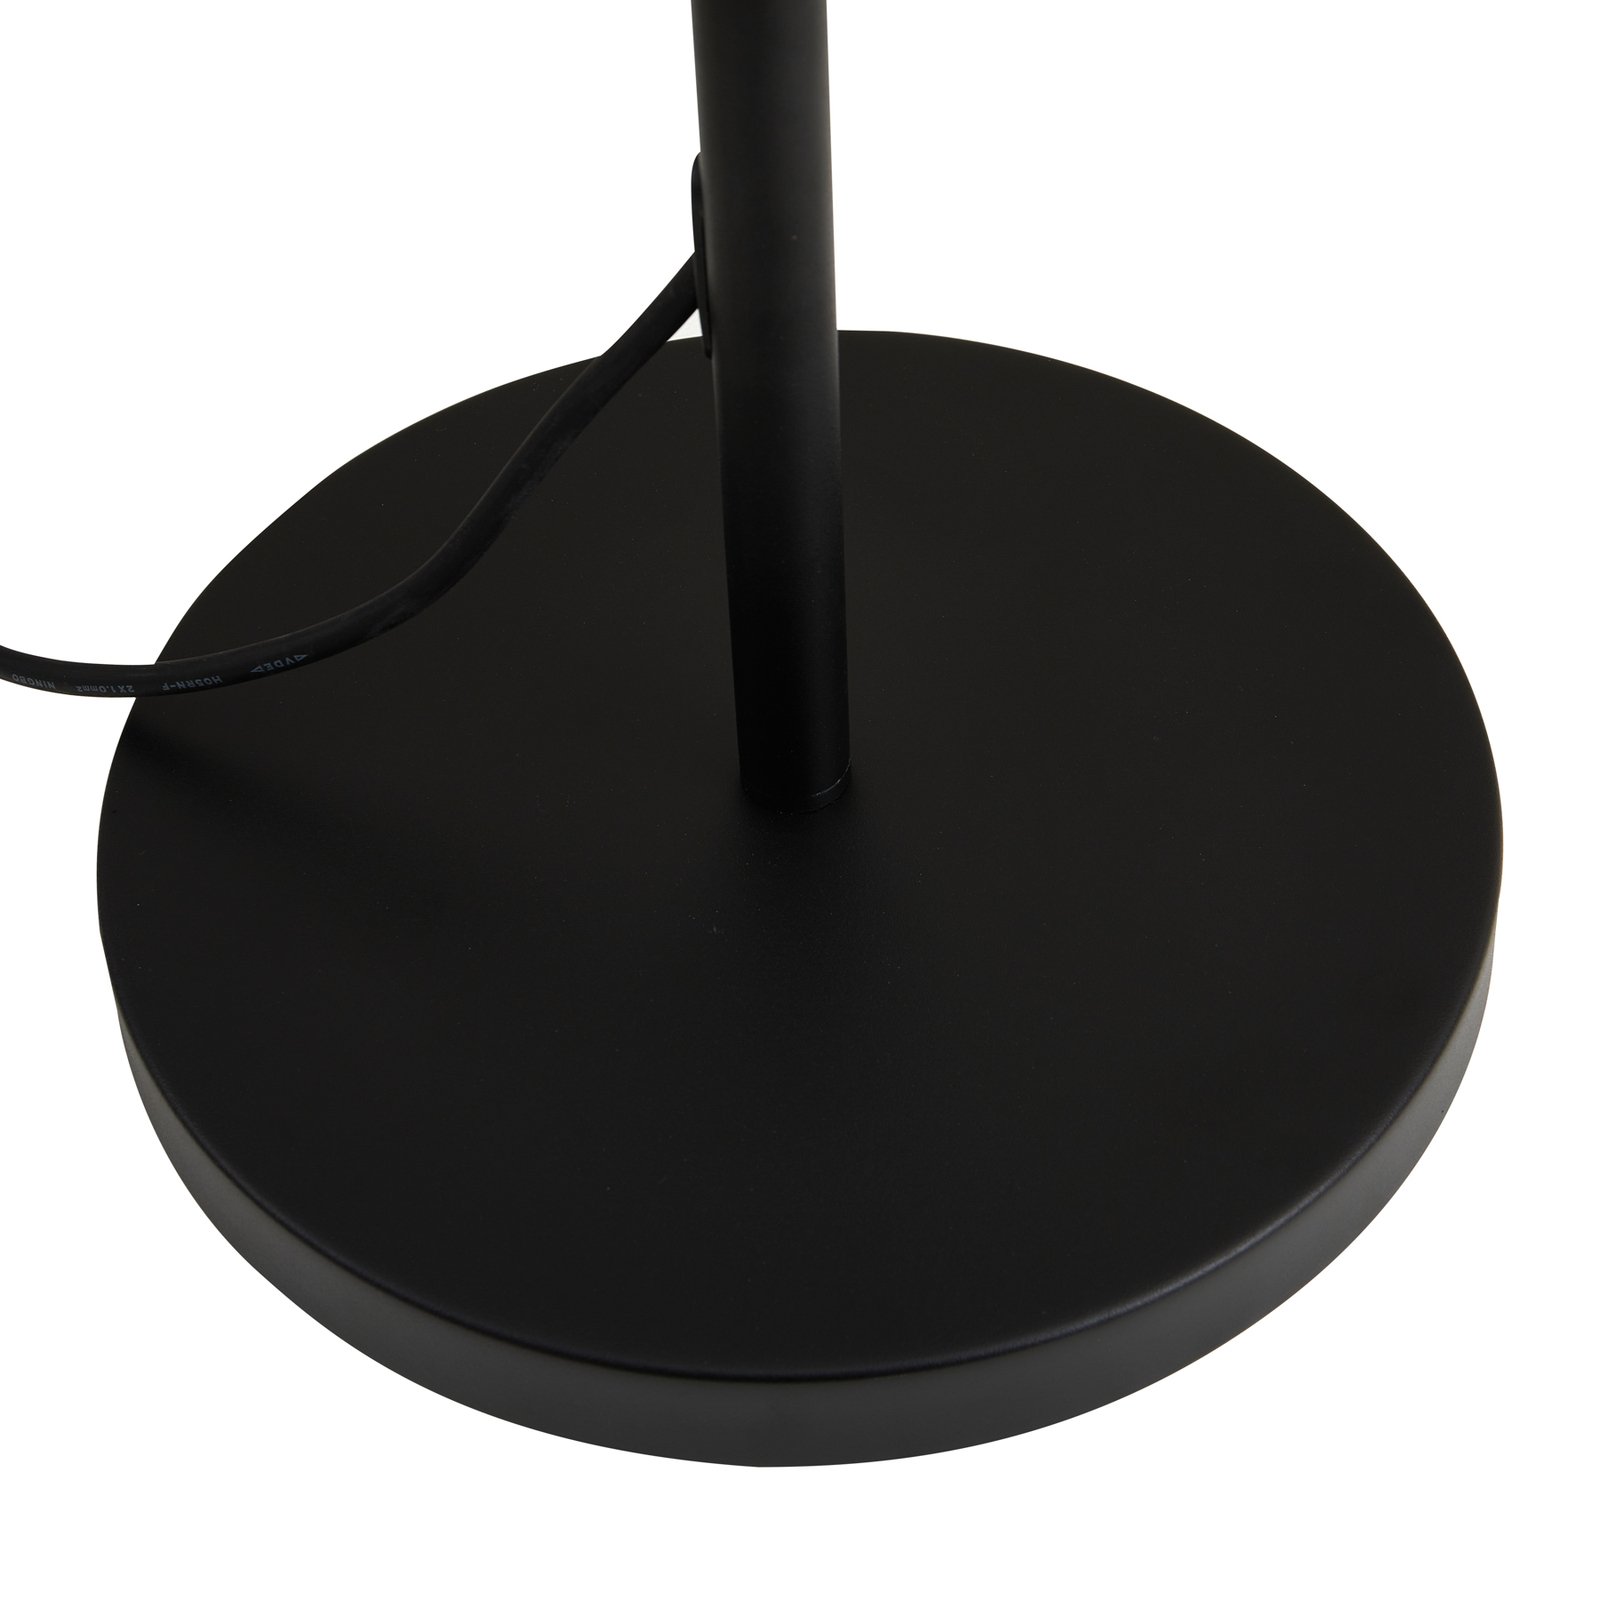 Venkovní stojací lampa Lucande LED Heribio, černá, železo, 153 cm